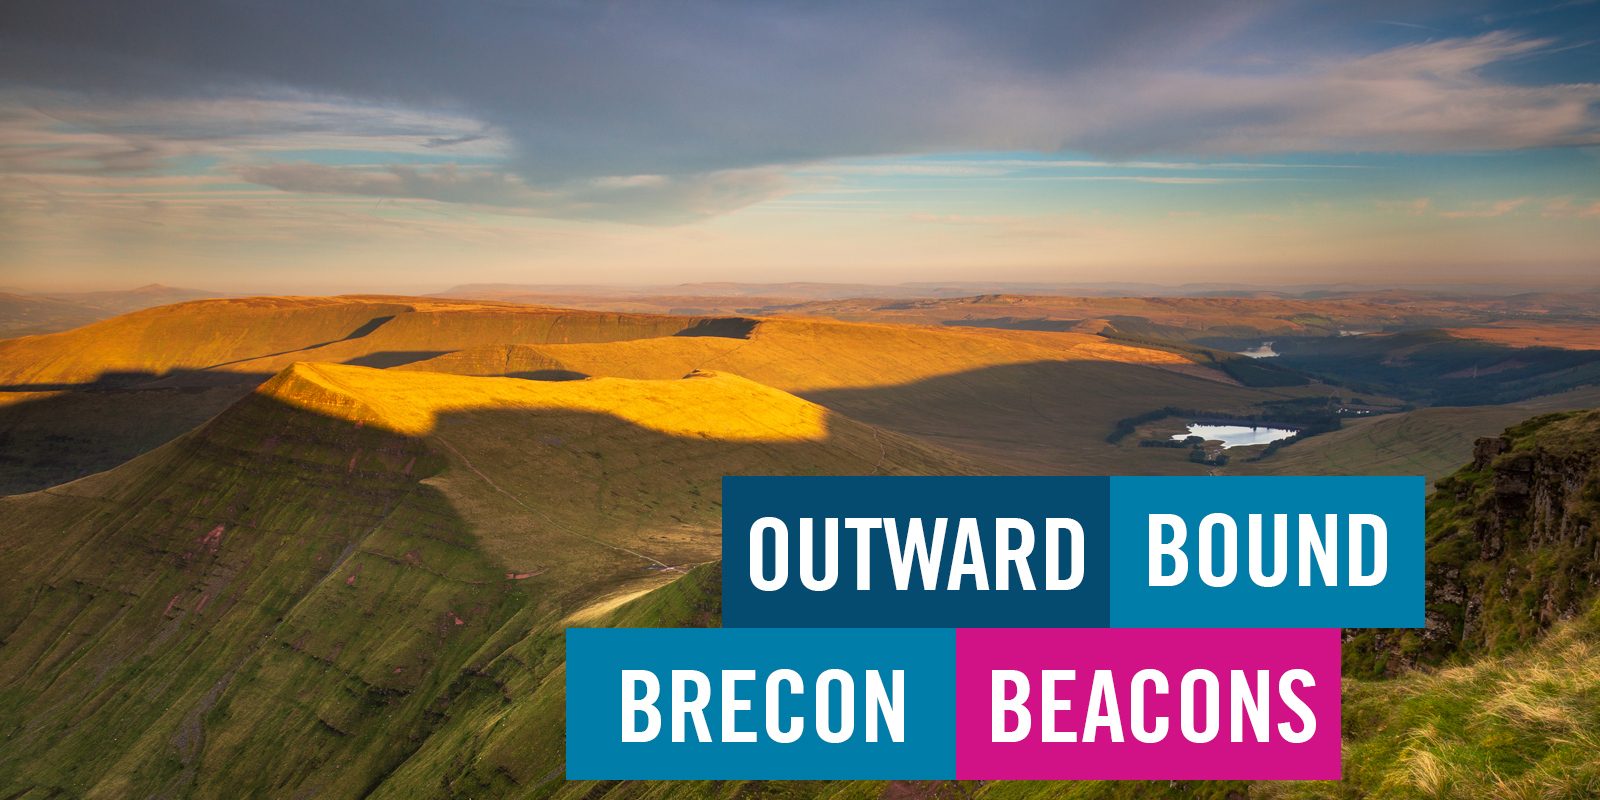 Outward bound brecon beacons mountain view